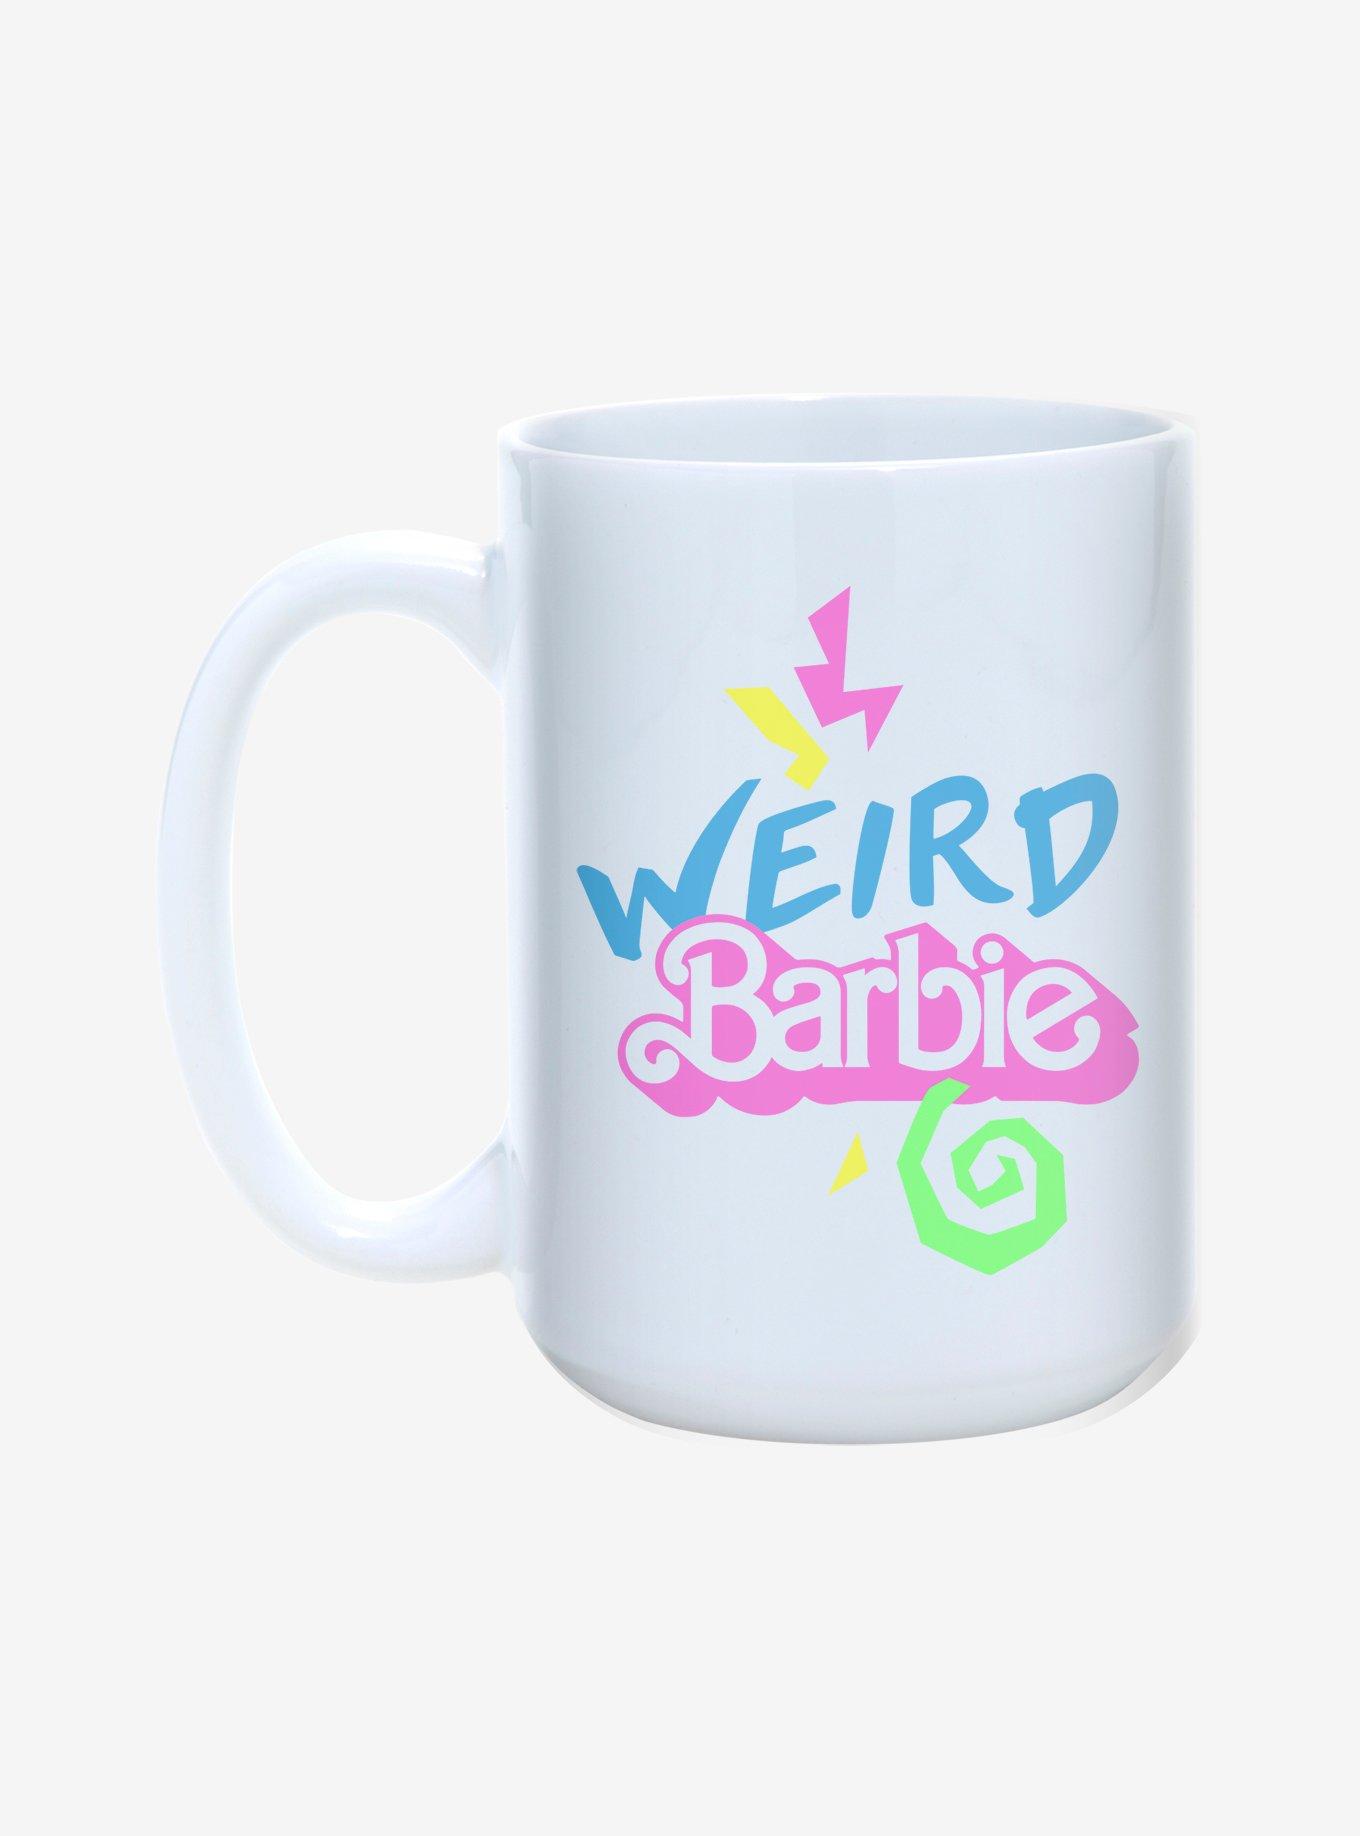 Barbie Weird Barbie Mug 15oz